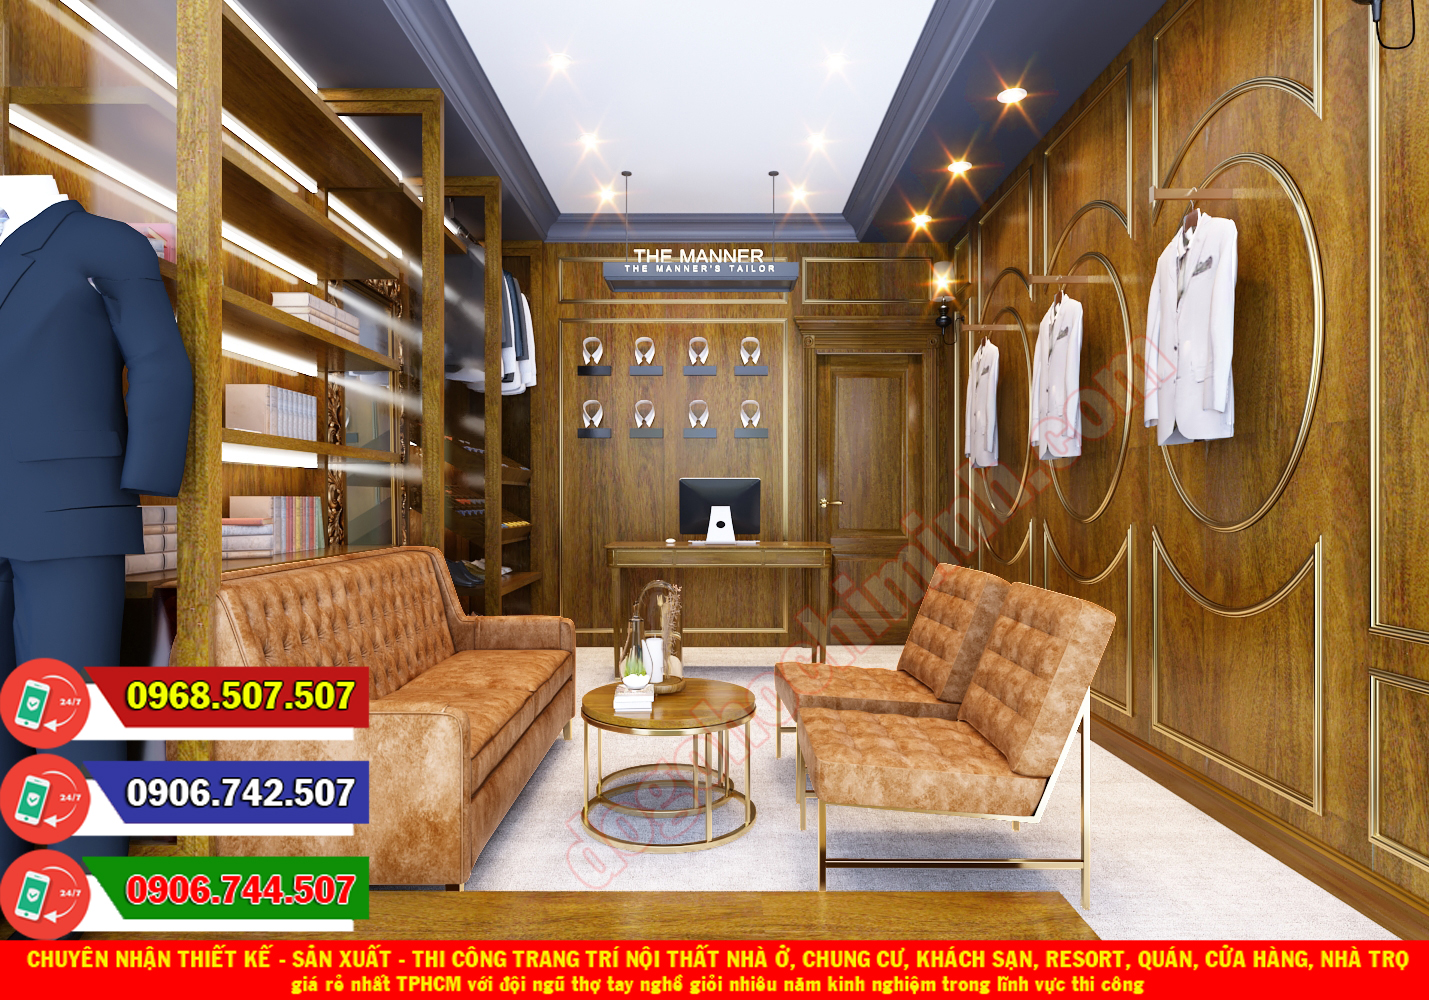 Thi công đồ gỗ nội thất cửa hàng giá rẻ nhất Phước Long B TPHCM